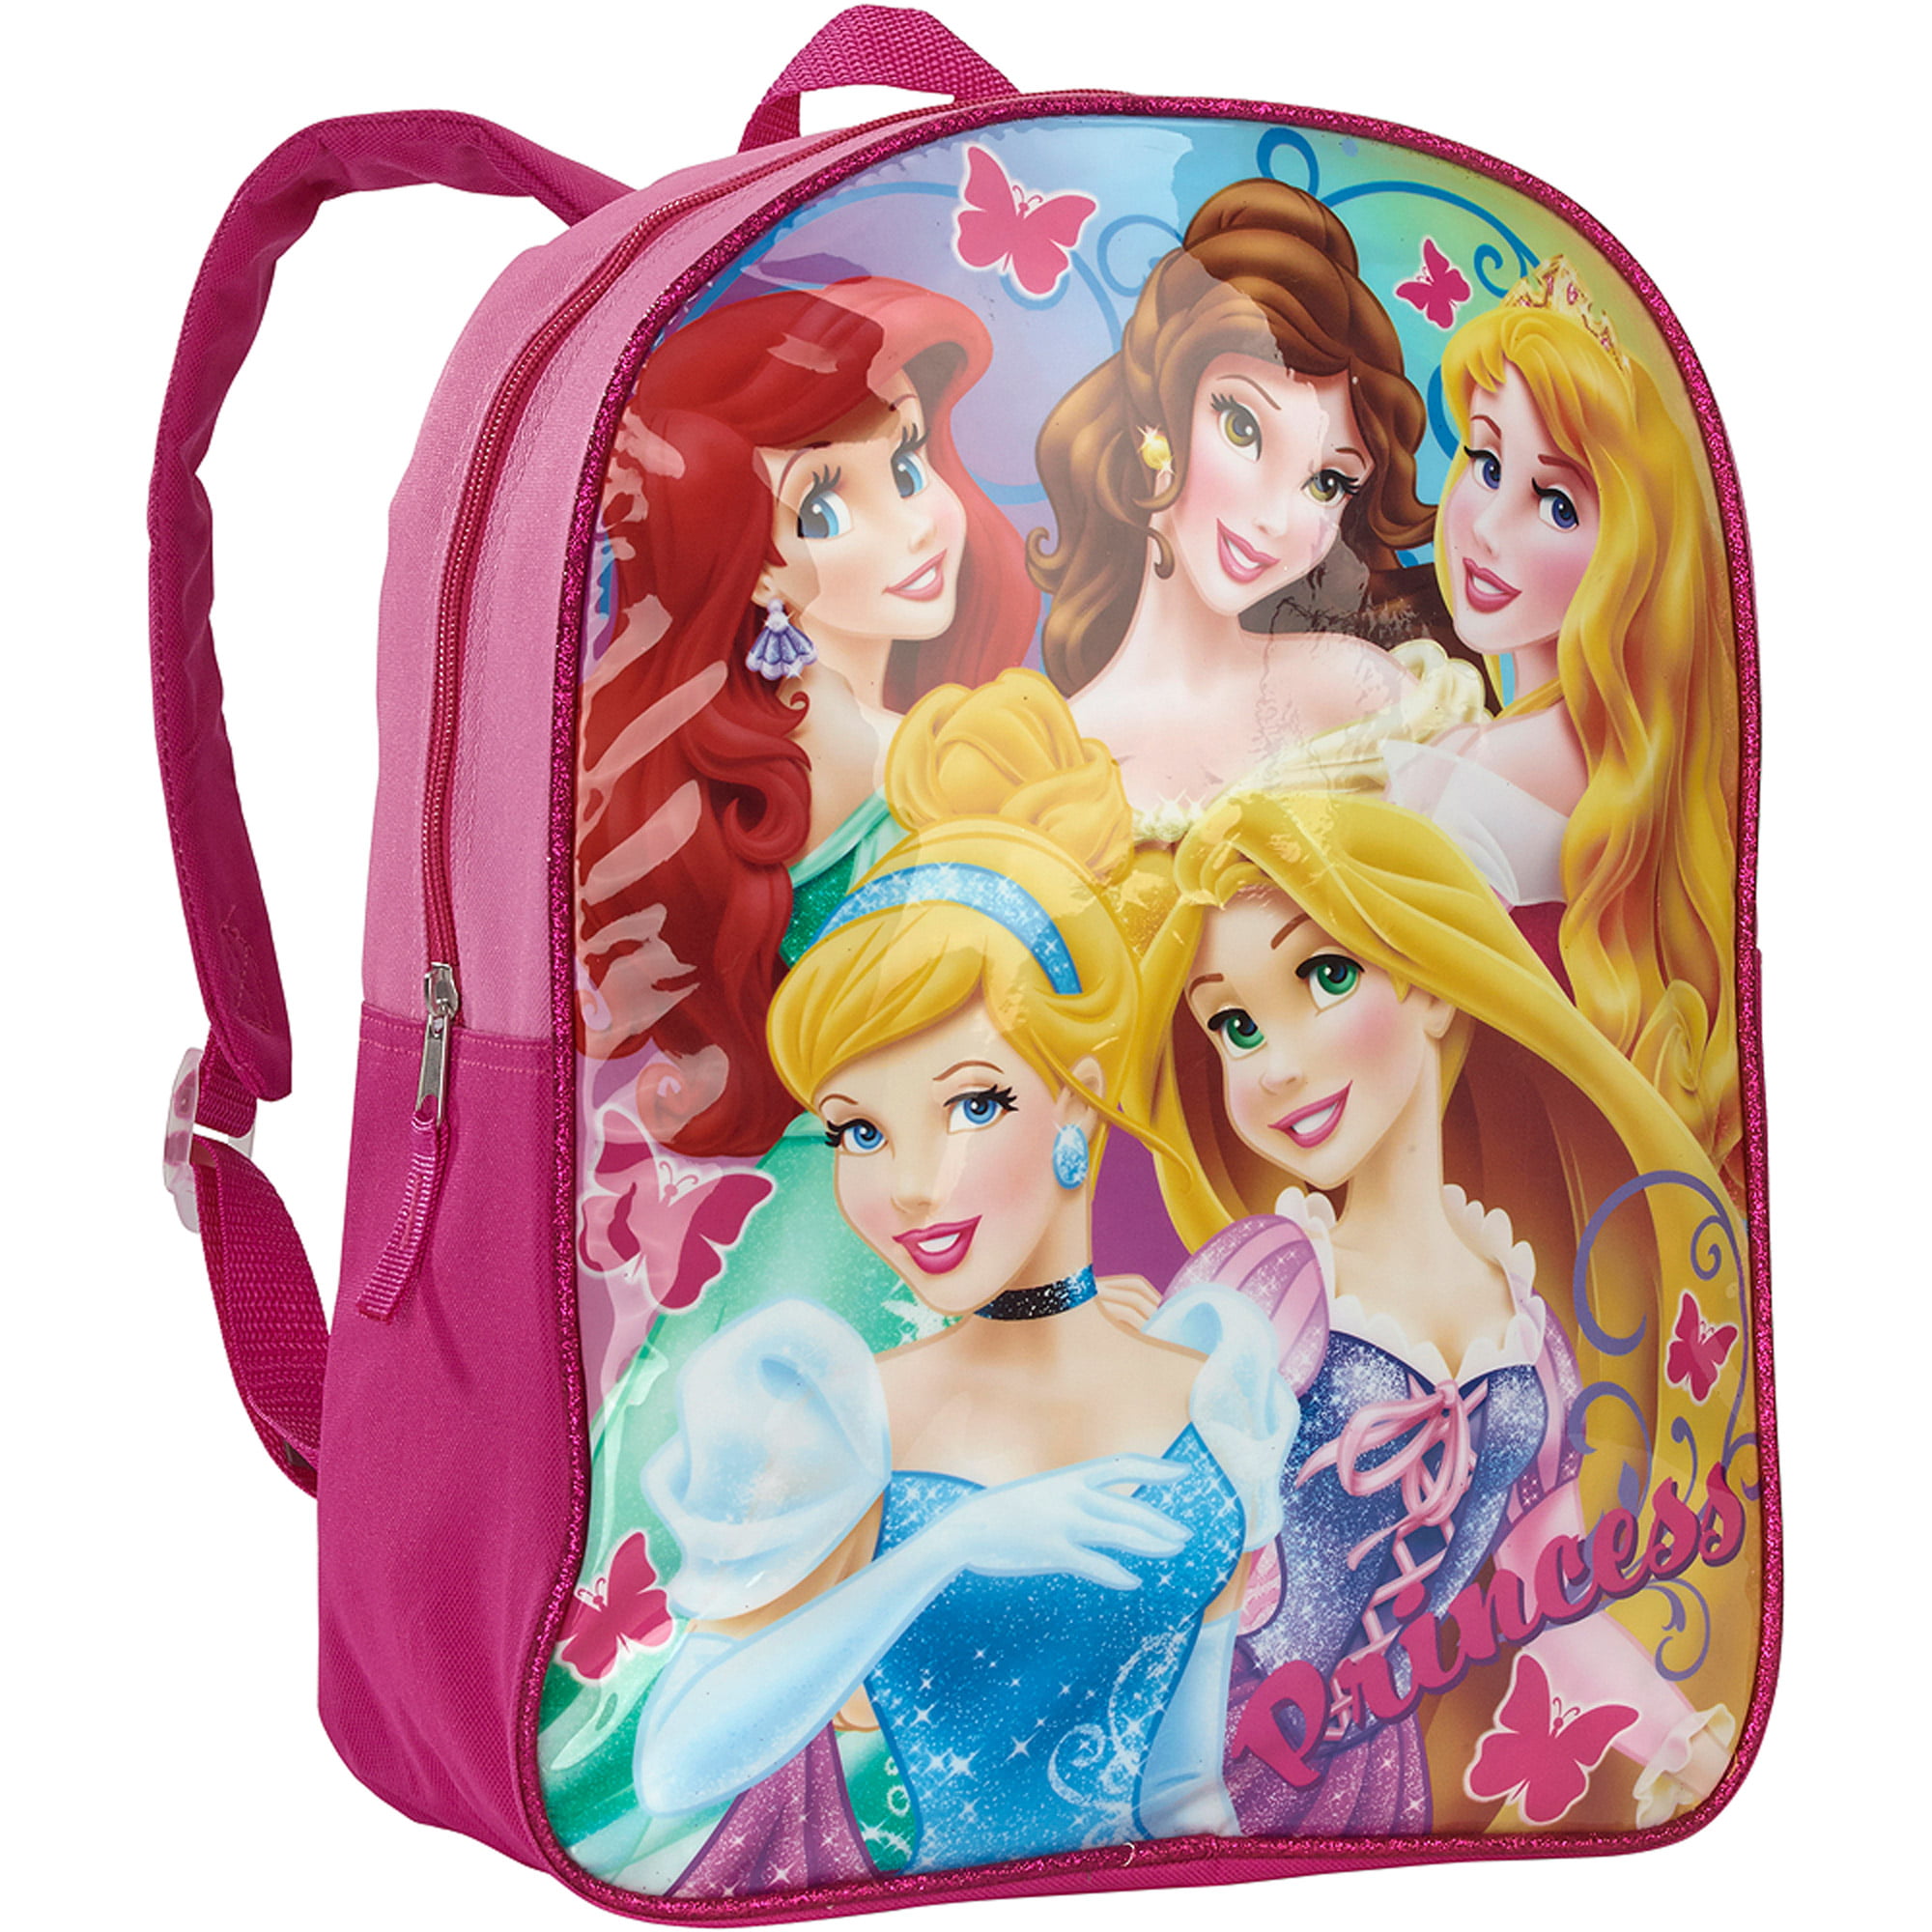 White Dog Childrens Adjustable Backpack Princess Pink Navy Blue Childrens Bag 